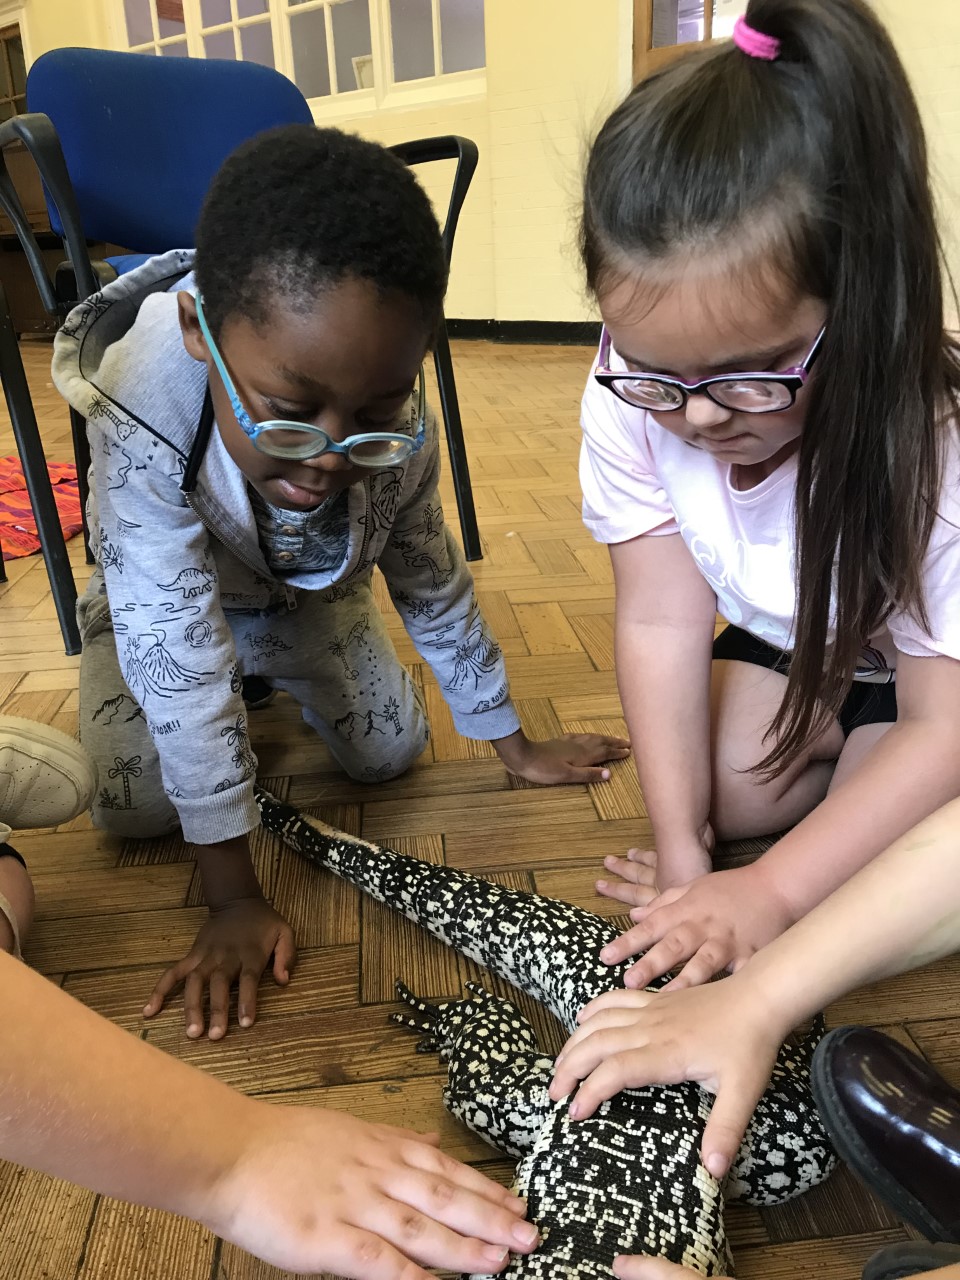 Children touching a tegu.